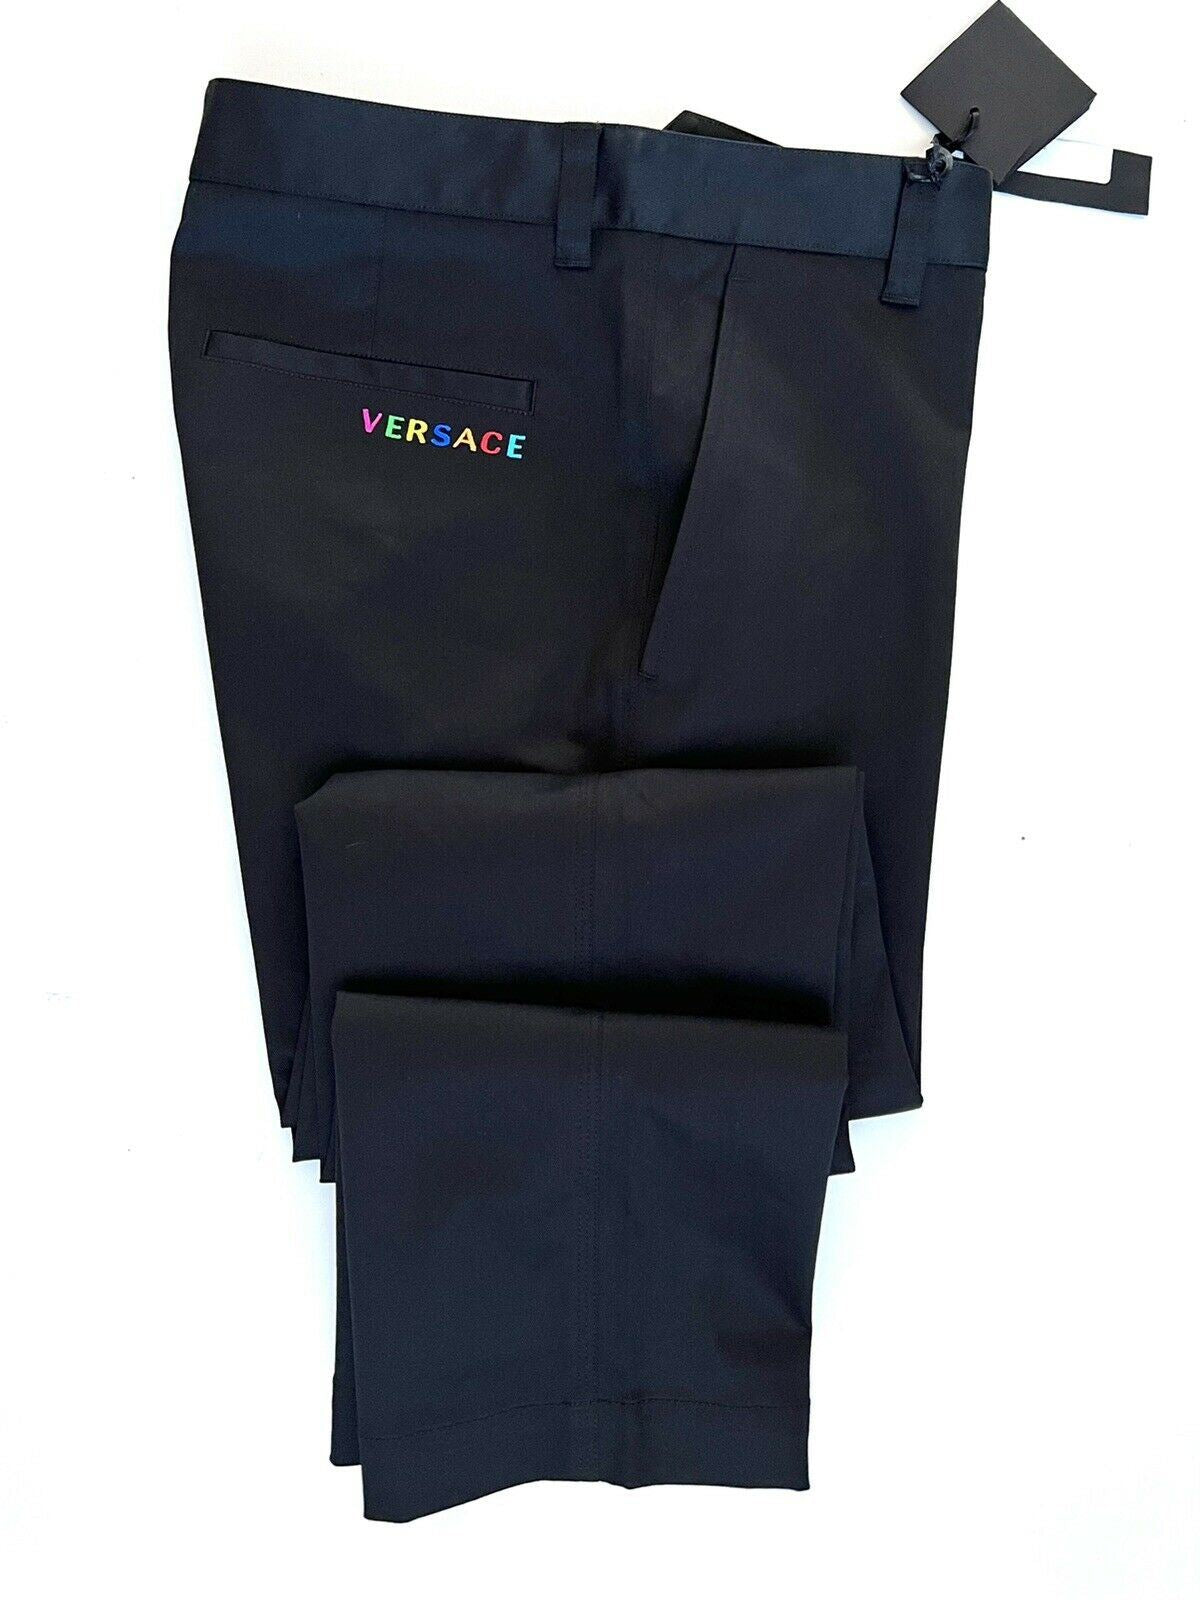 Мужские черные брюки Versace NWT 650 долларов США (52 евро), производство Италия A84004